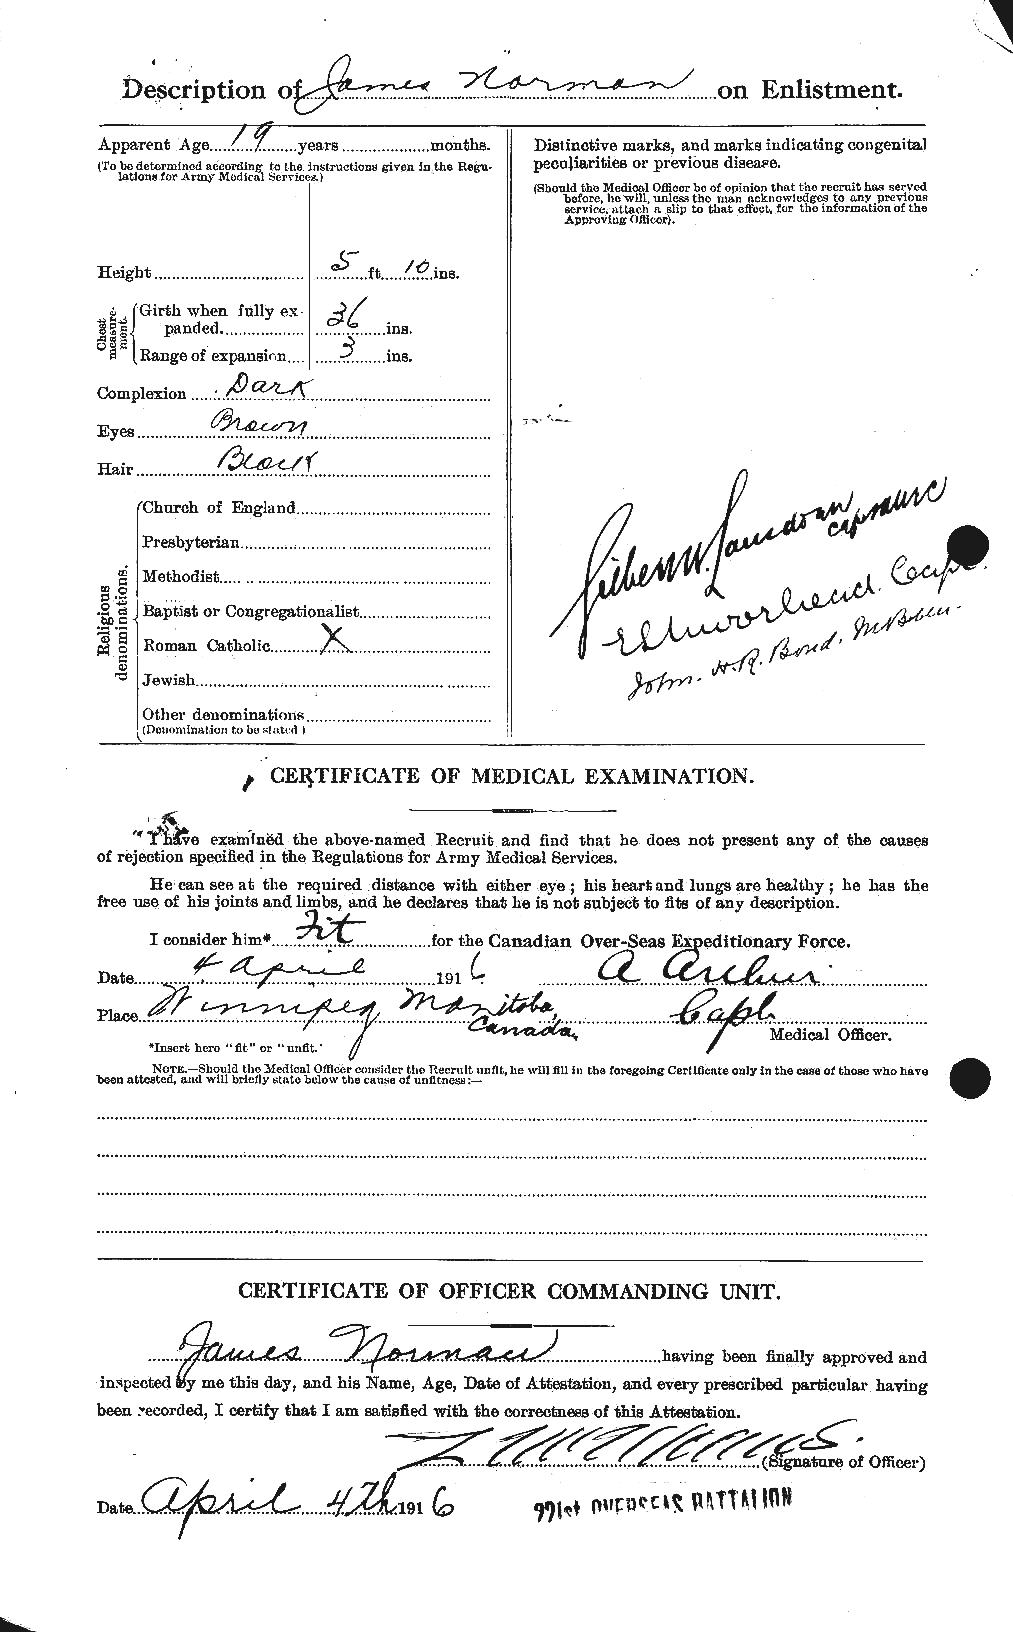 Dossiers du Personnel de la Première Guerre mondiale - CEC 552131b